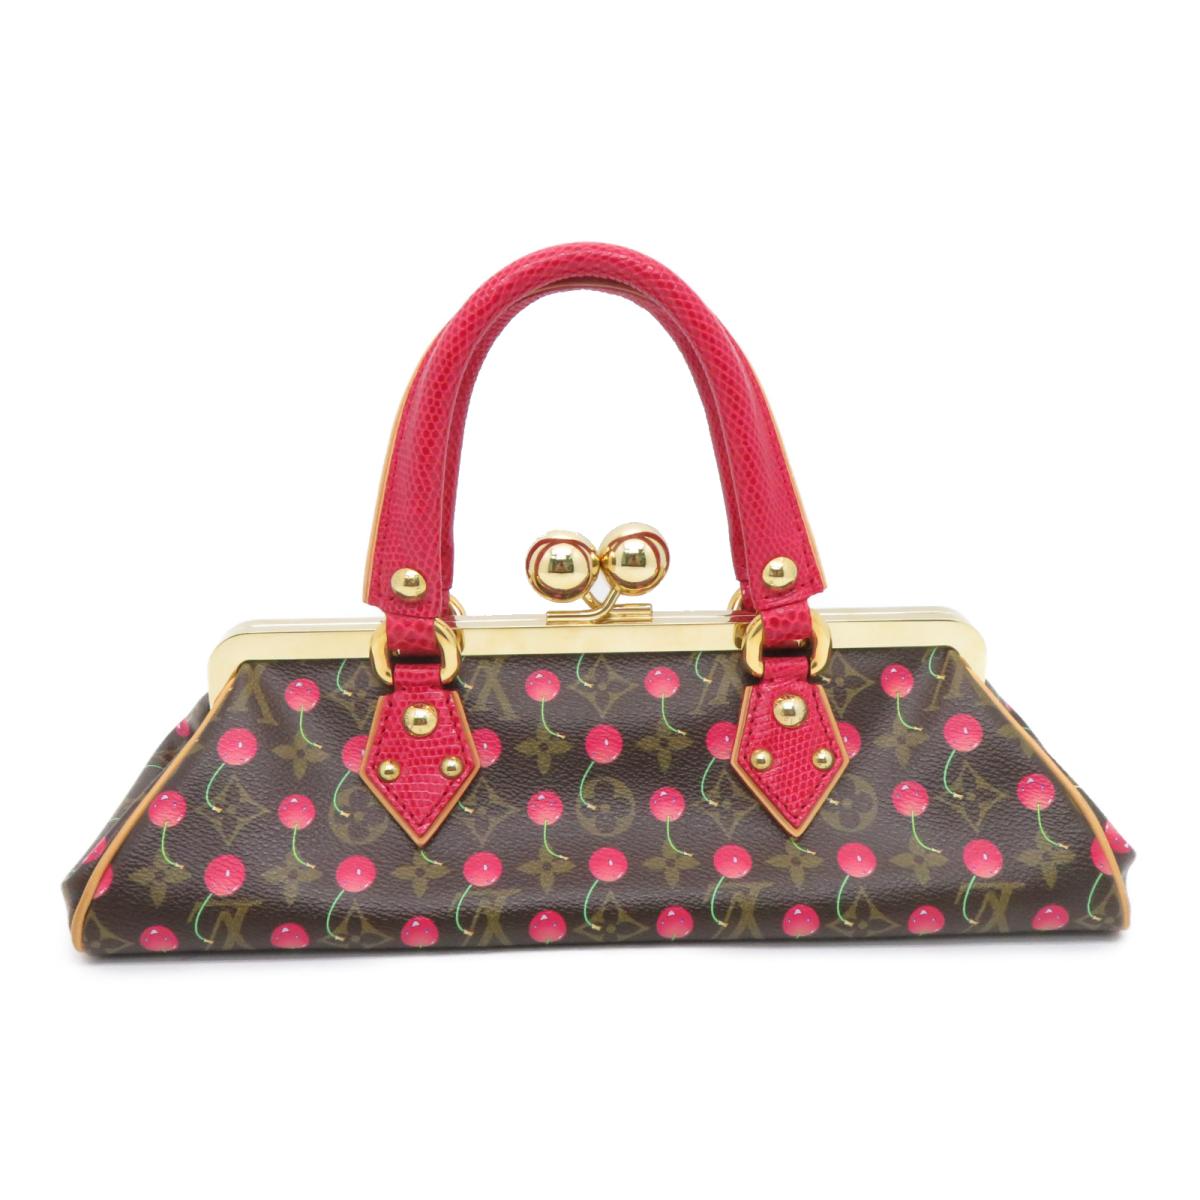 cherry lv purse